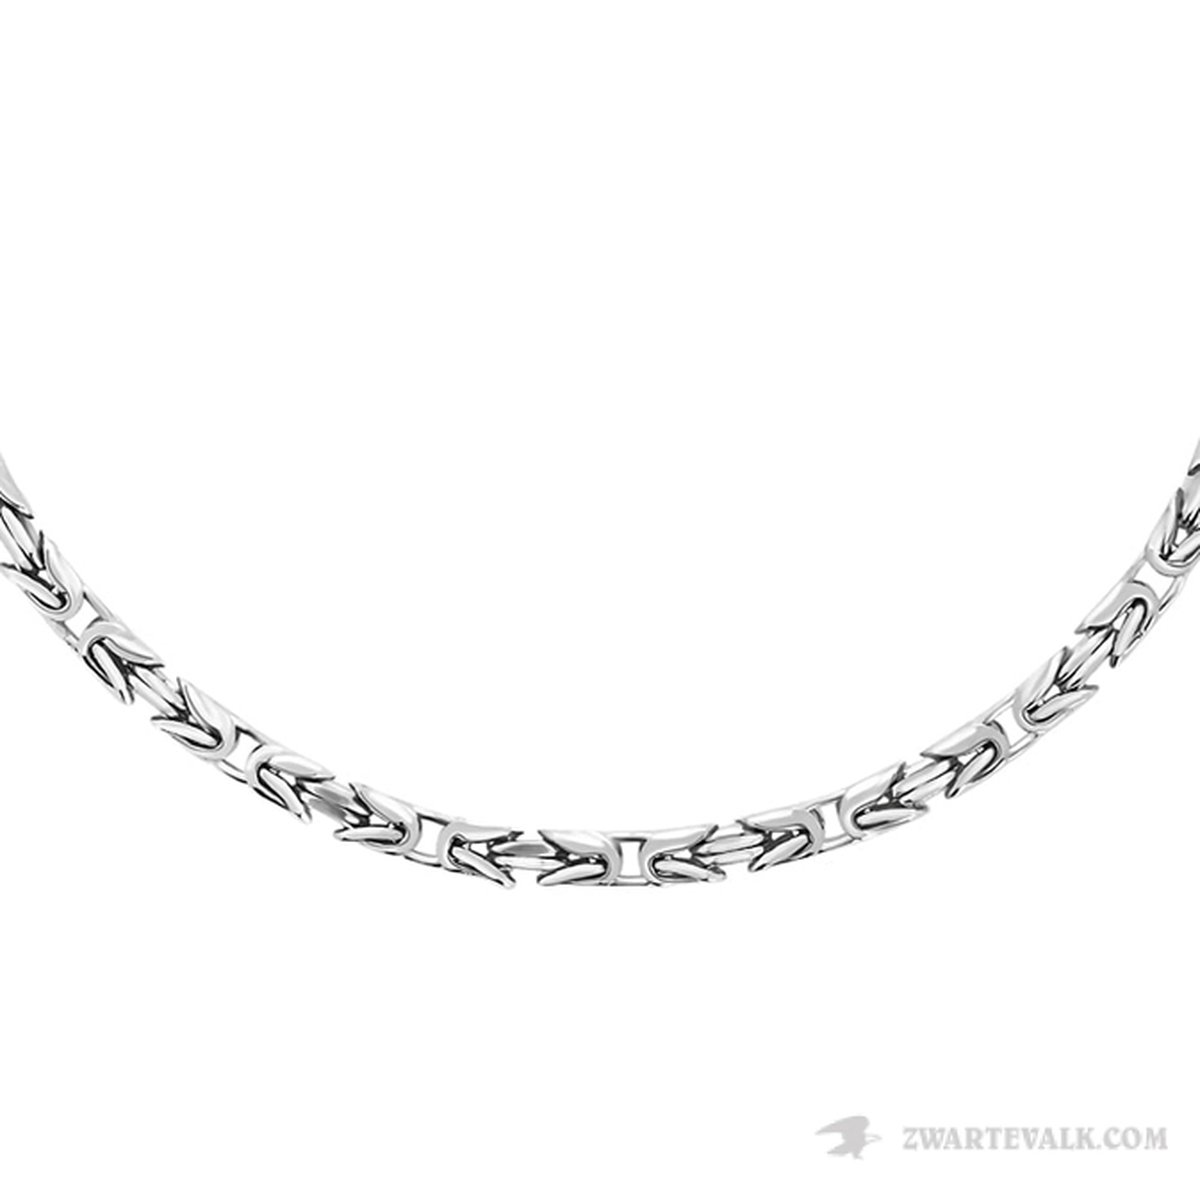 Juwelier Zwartevalk - Zilveren vierkante koningsschakel armband BIZ 40/18cm